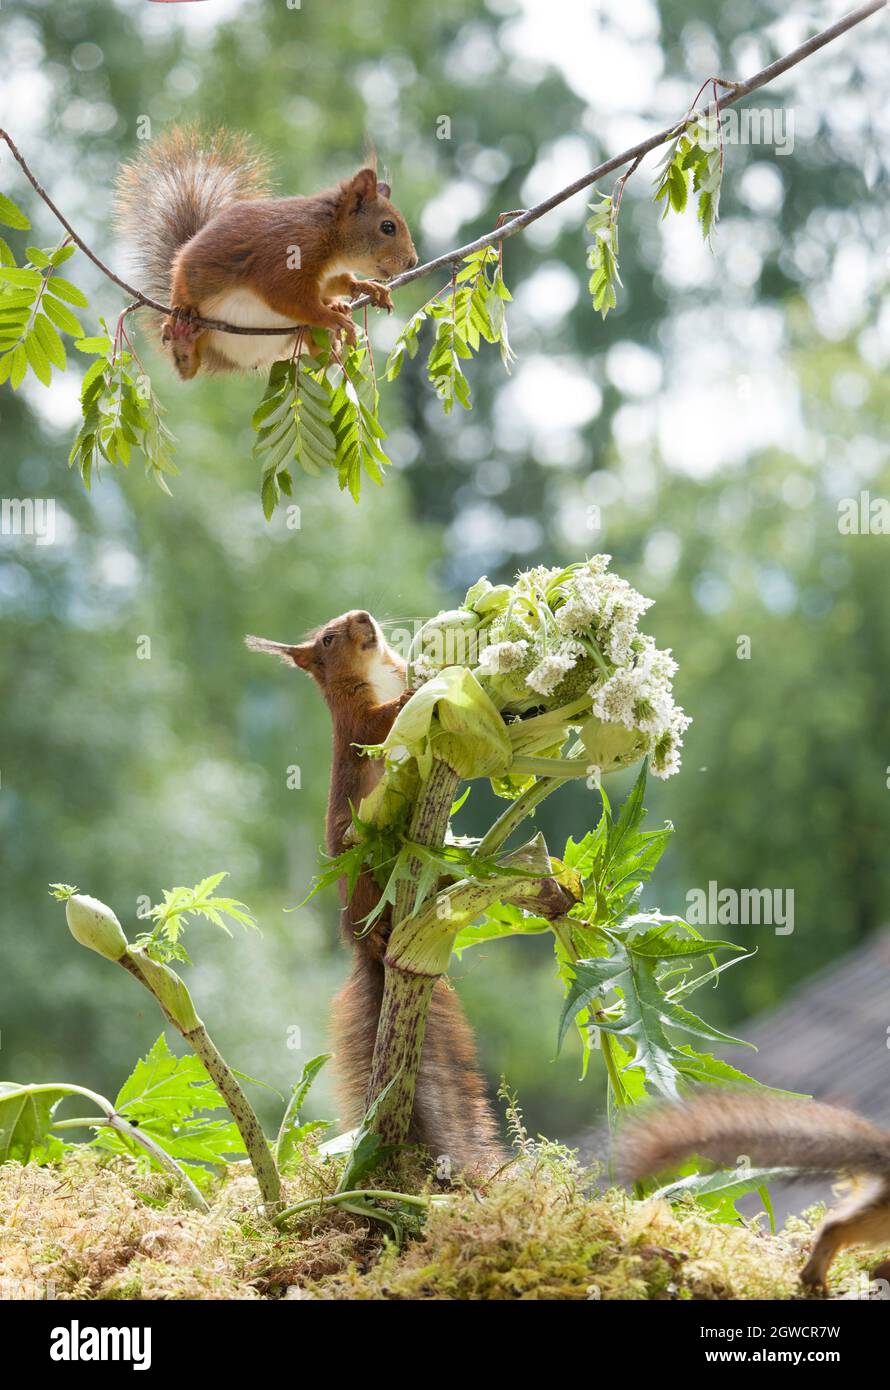 Eichhörnchen mit einem scharfkraut Blume Stockfoto